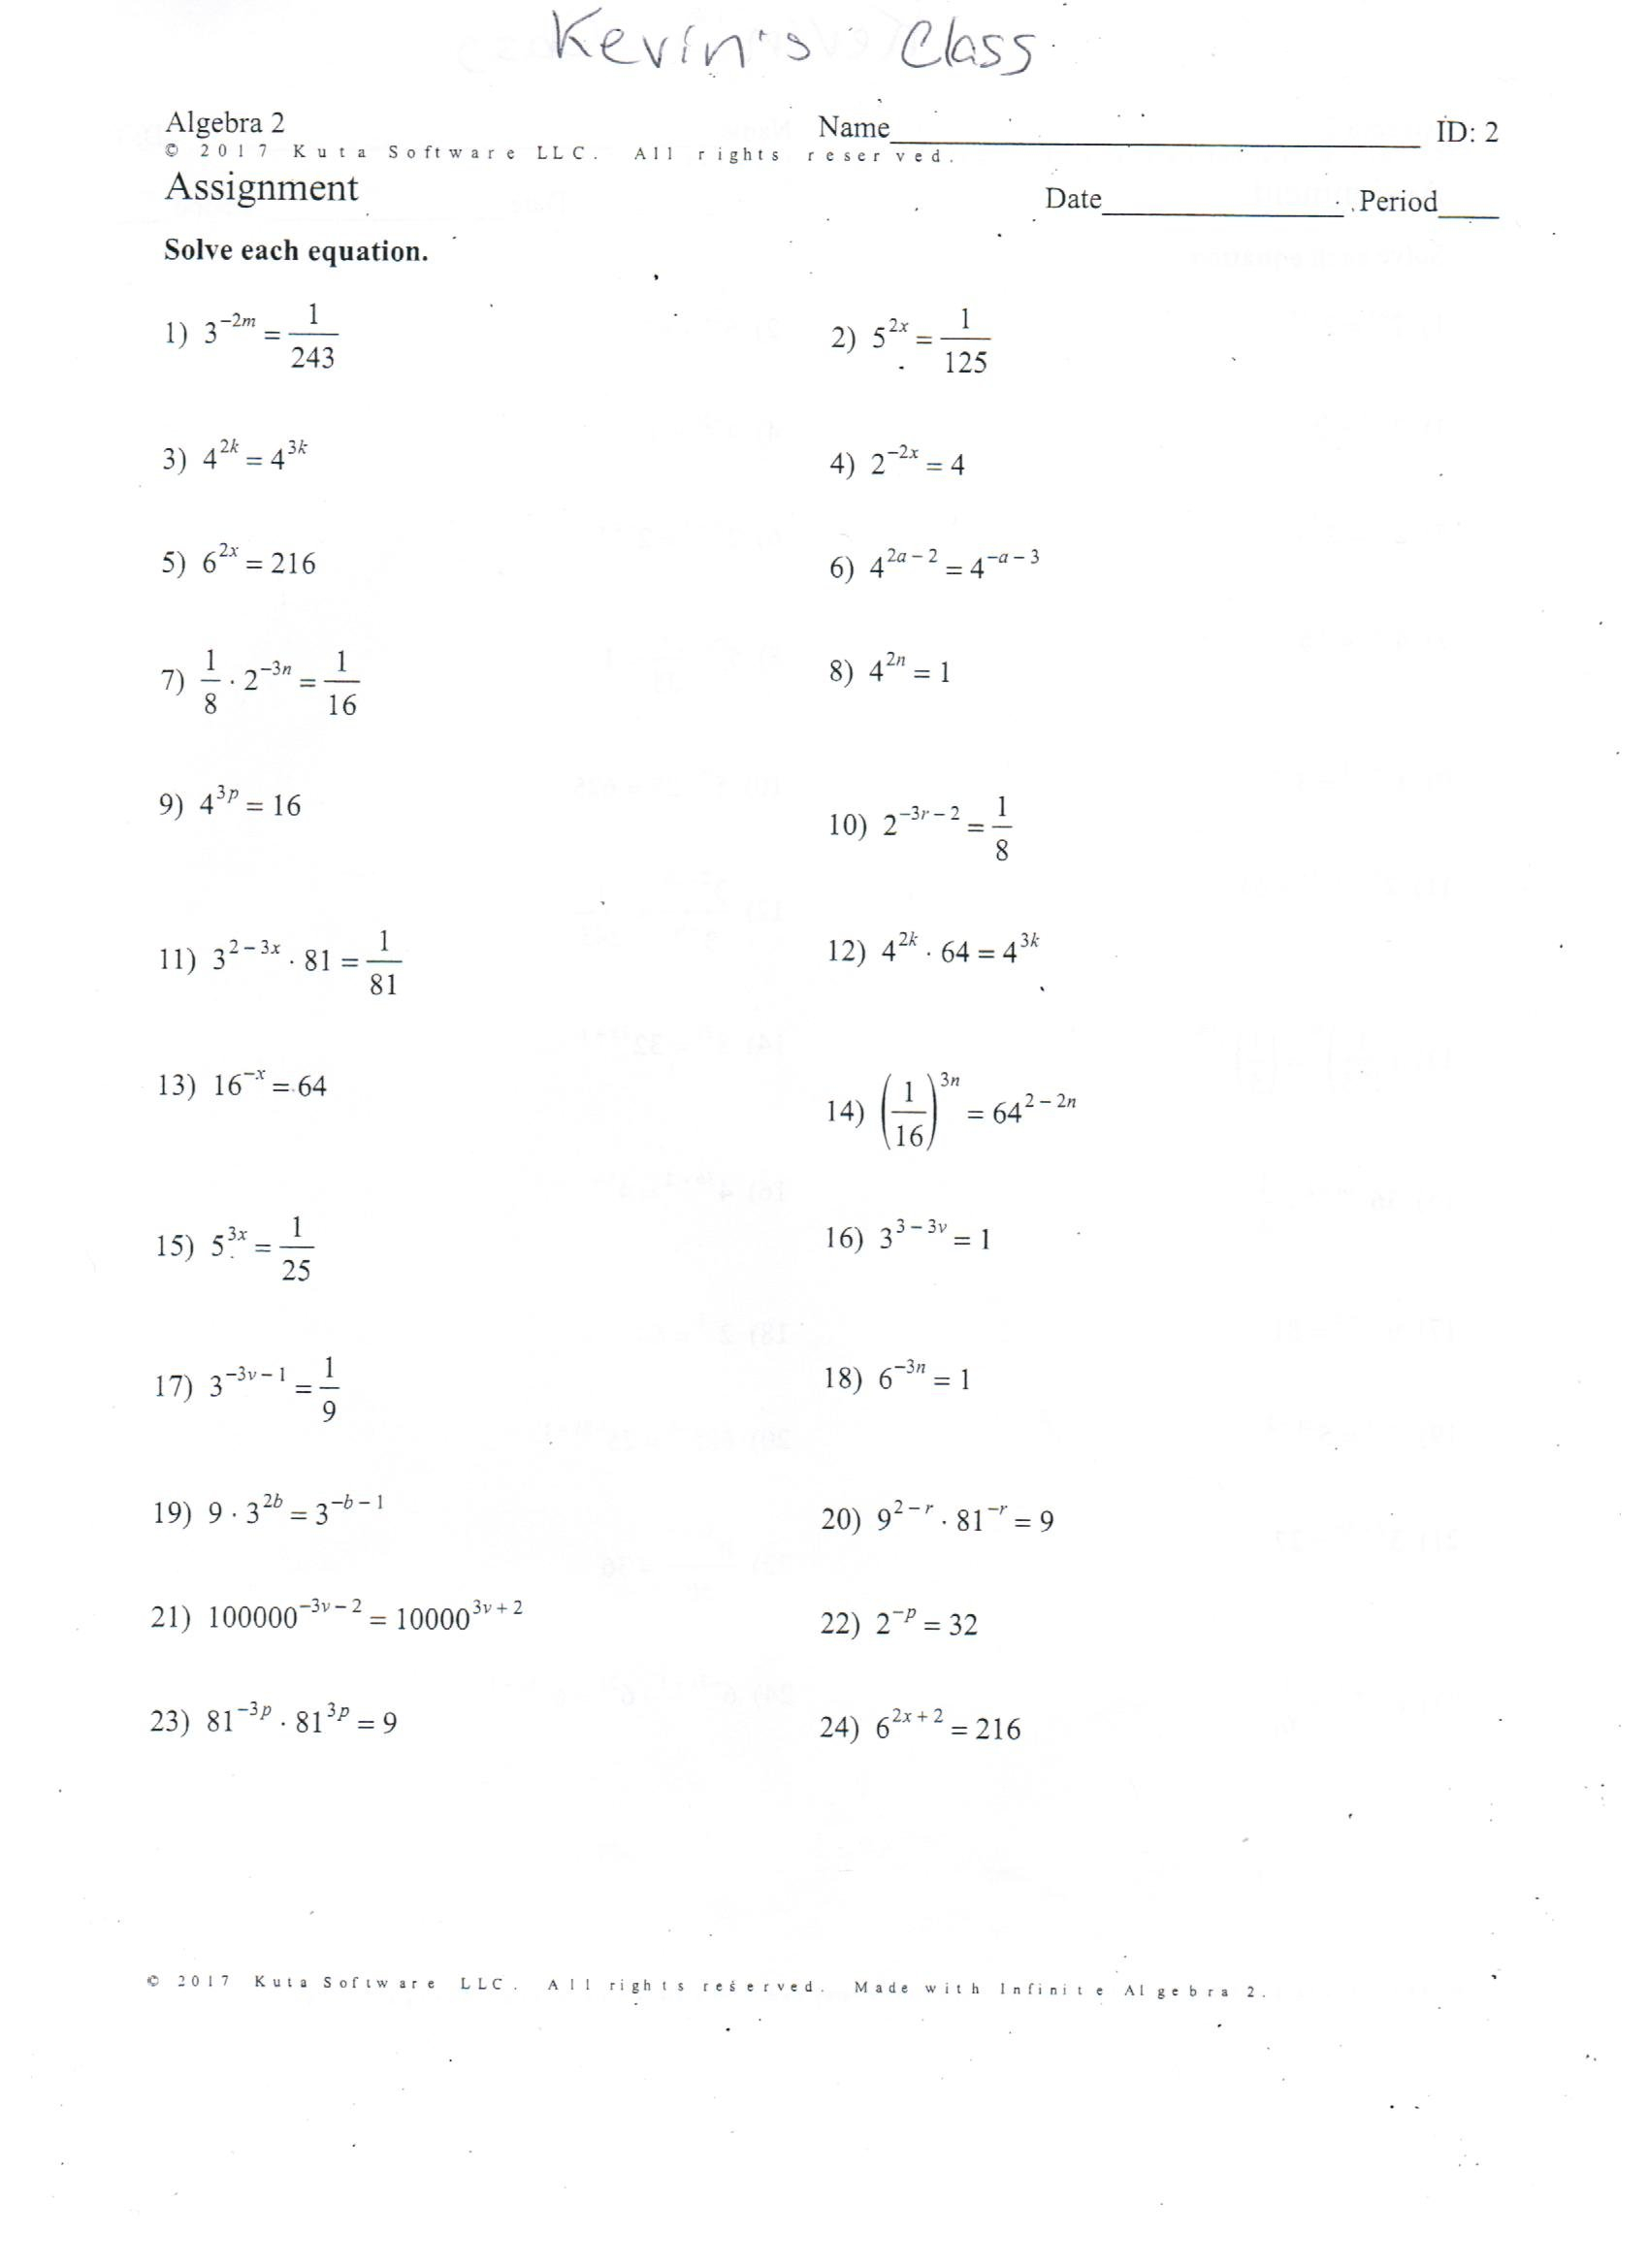 Worksheet Using The Quadratic Formula Worksheet Solving Quadratic For Solving Using The Quadratic Formula Worksheet